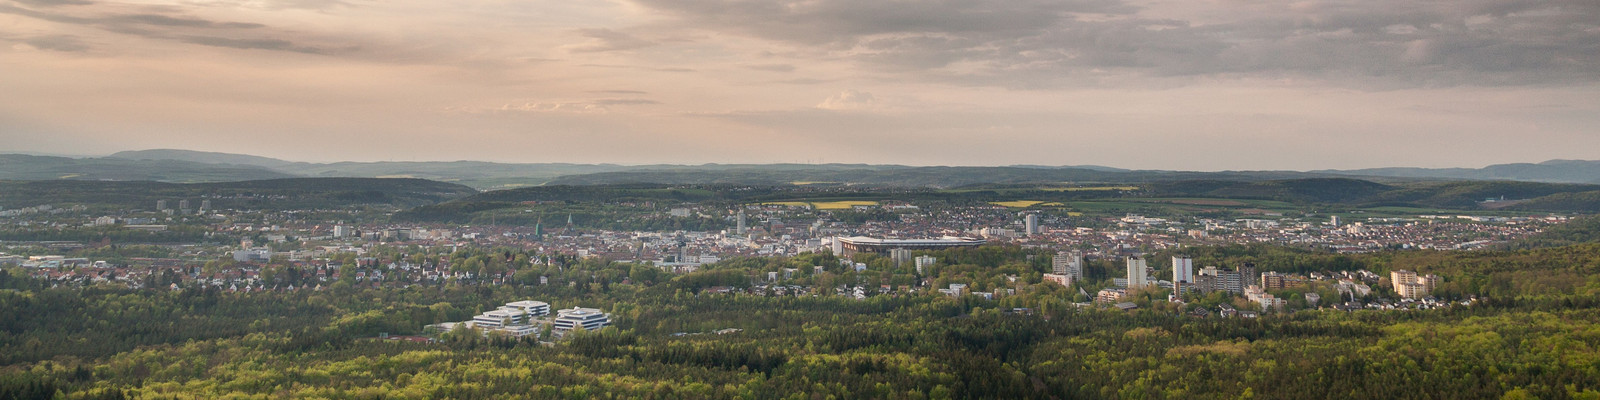 Blick auf Kaiserslautern vom Humbergturm aus, mit Wald, Himmel und Wolken.